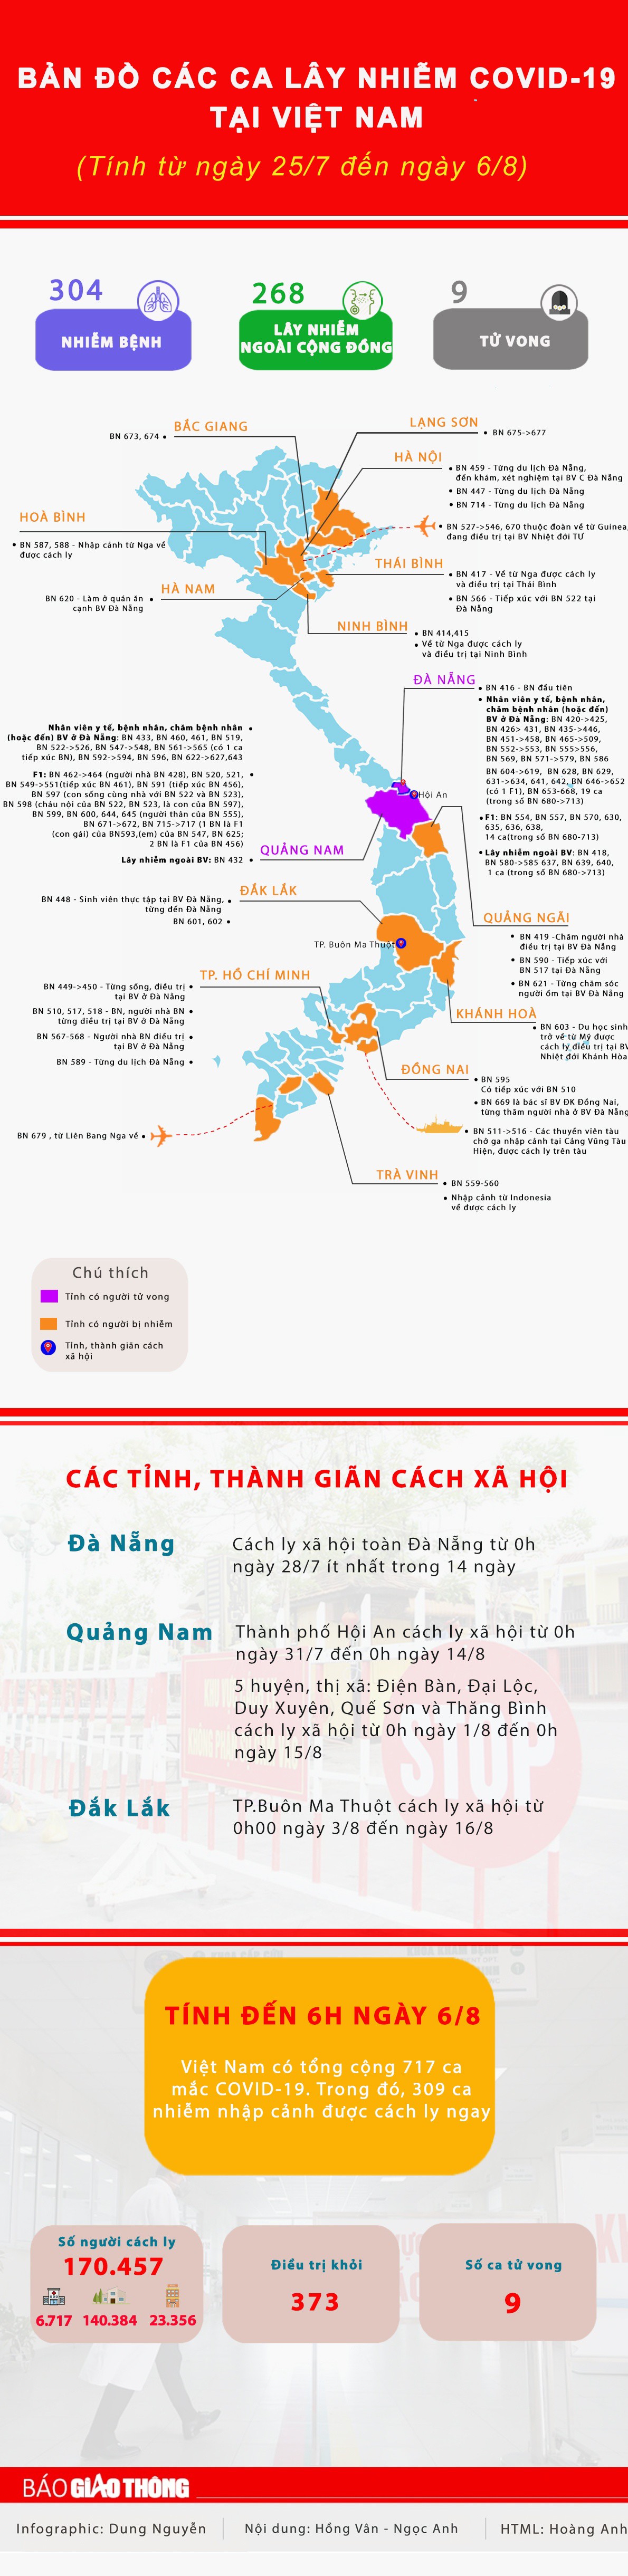 Infographic: Bản đồ lây nhiễm Covid-19 mới nhất tại Việt Nam - 1